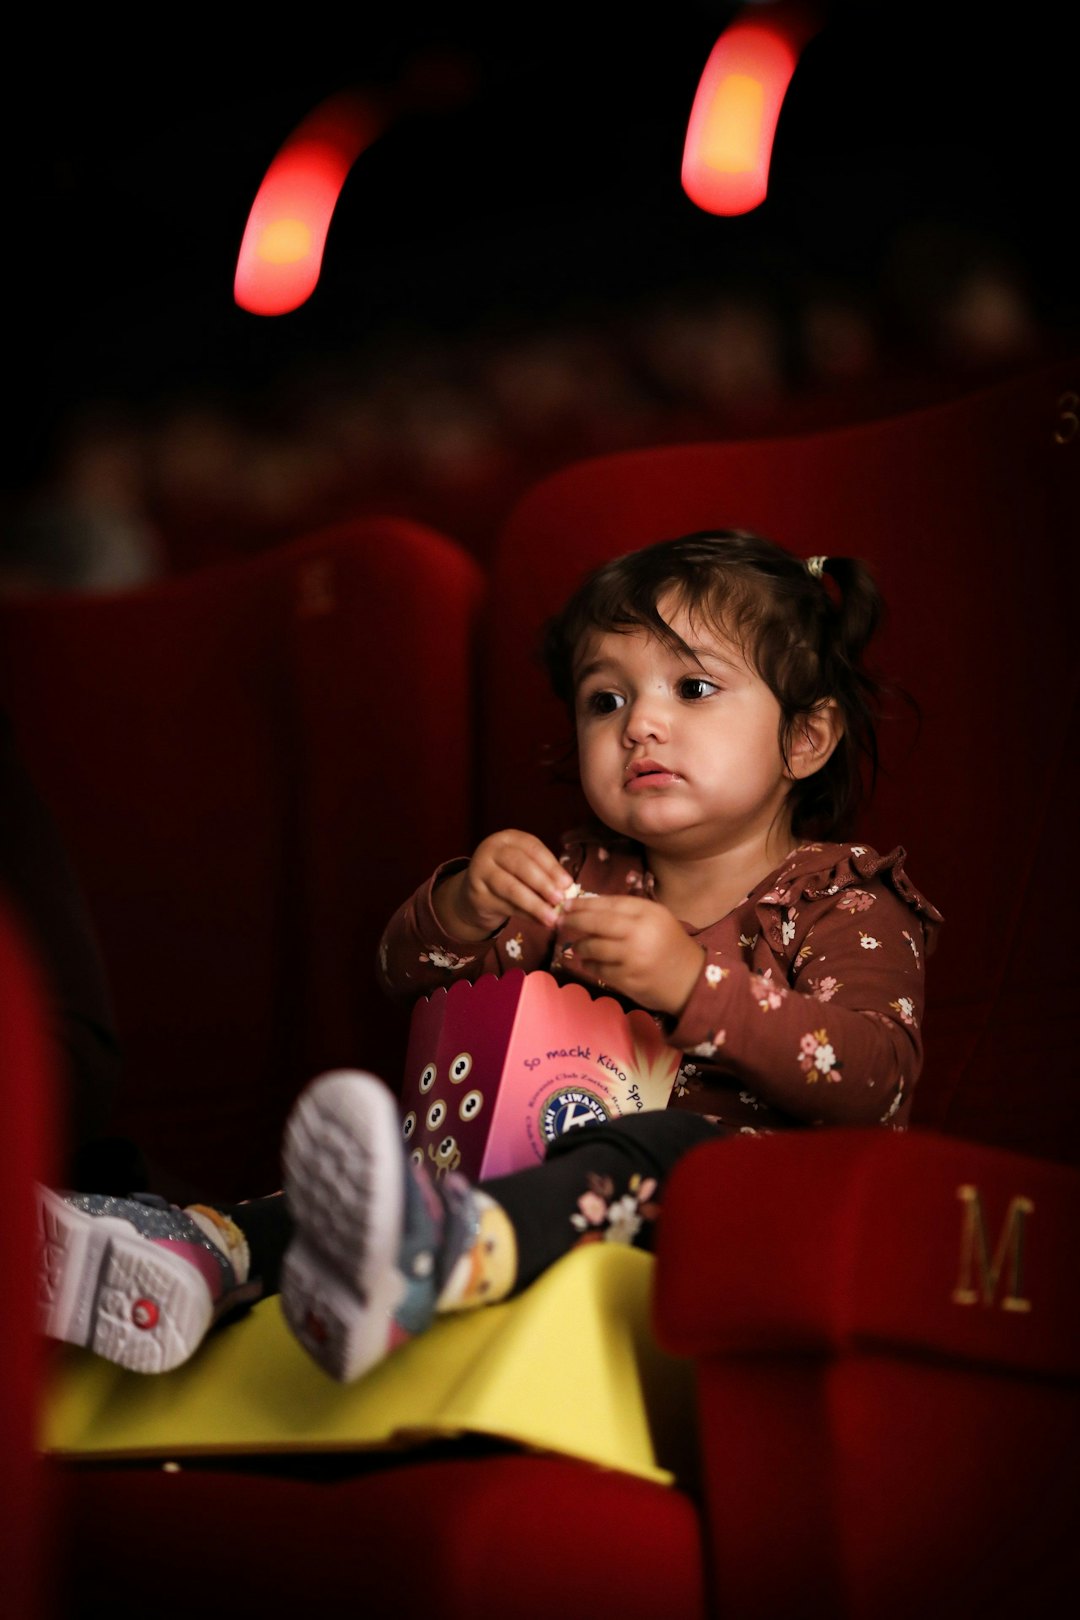 Une petite fille sur un fauteuil de cinéma qui mange du pop-corn.